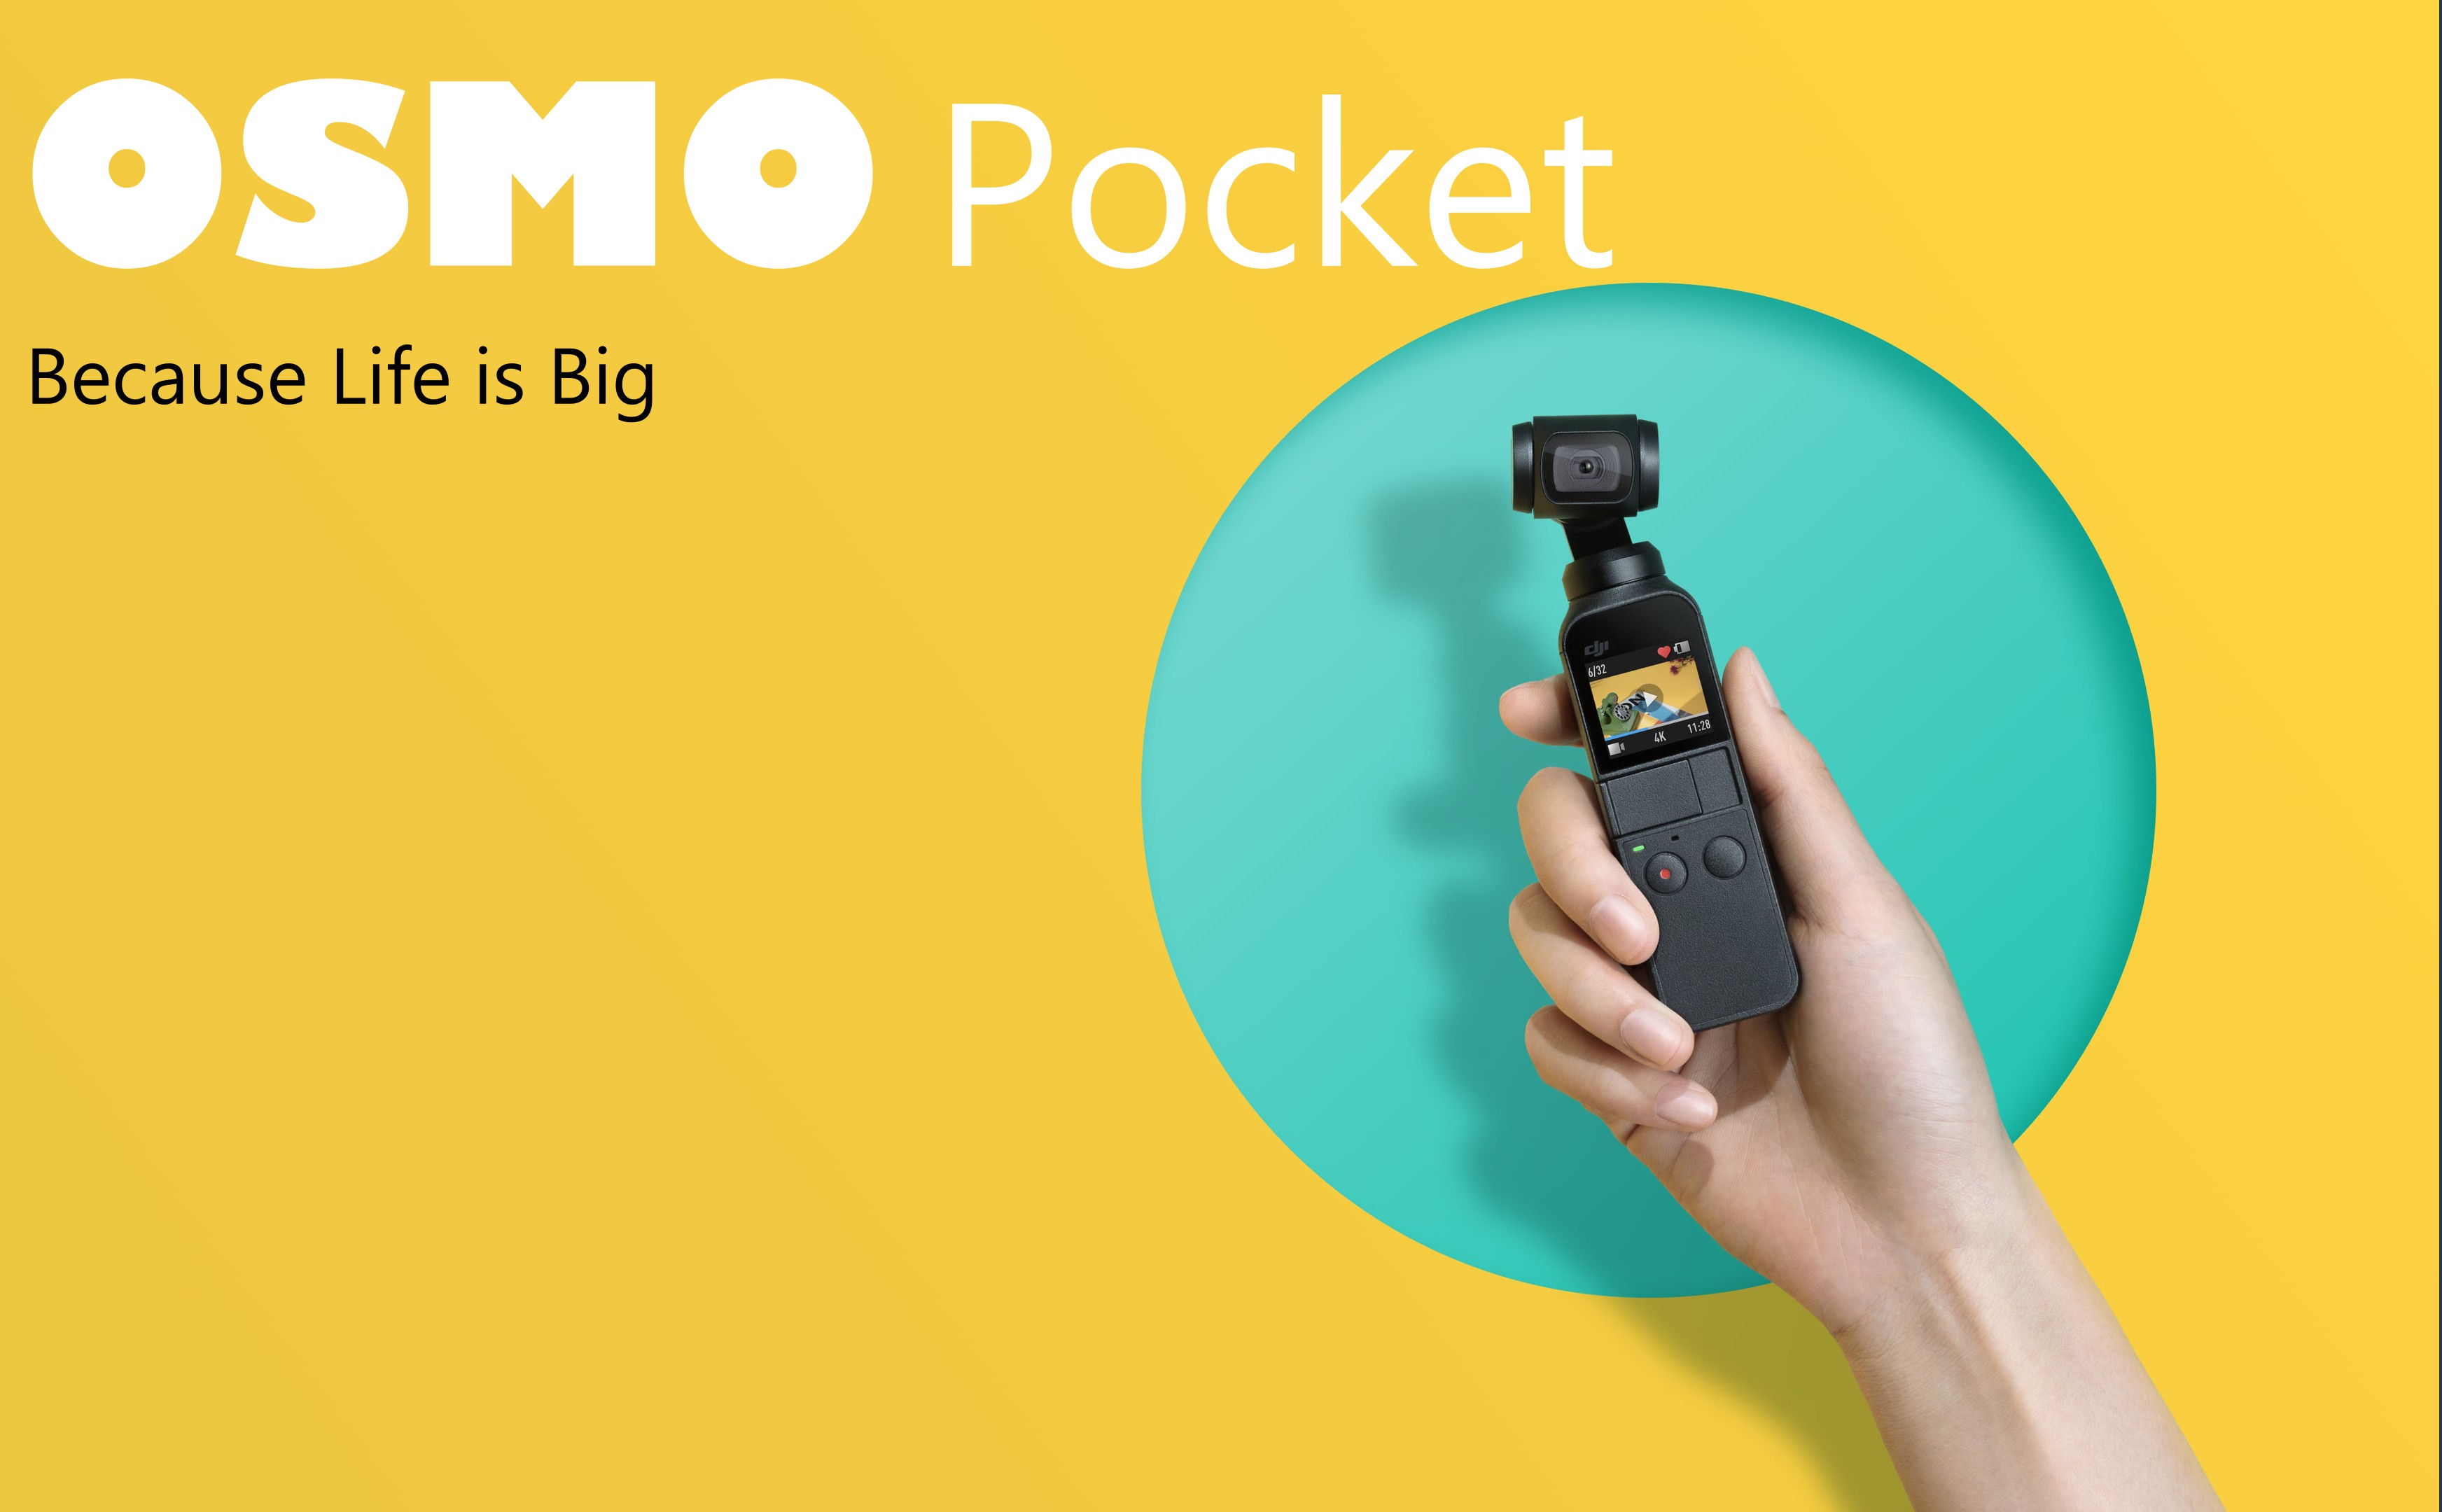 DJI Osmo Pocket - máy quay phim bỏ túi chống rung 3 trục, quay 4K 60fps, cực nhẹ 116g, giá 349$